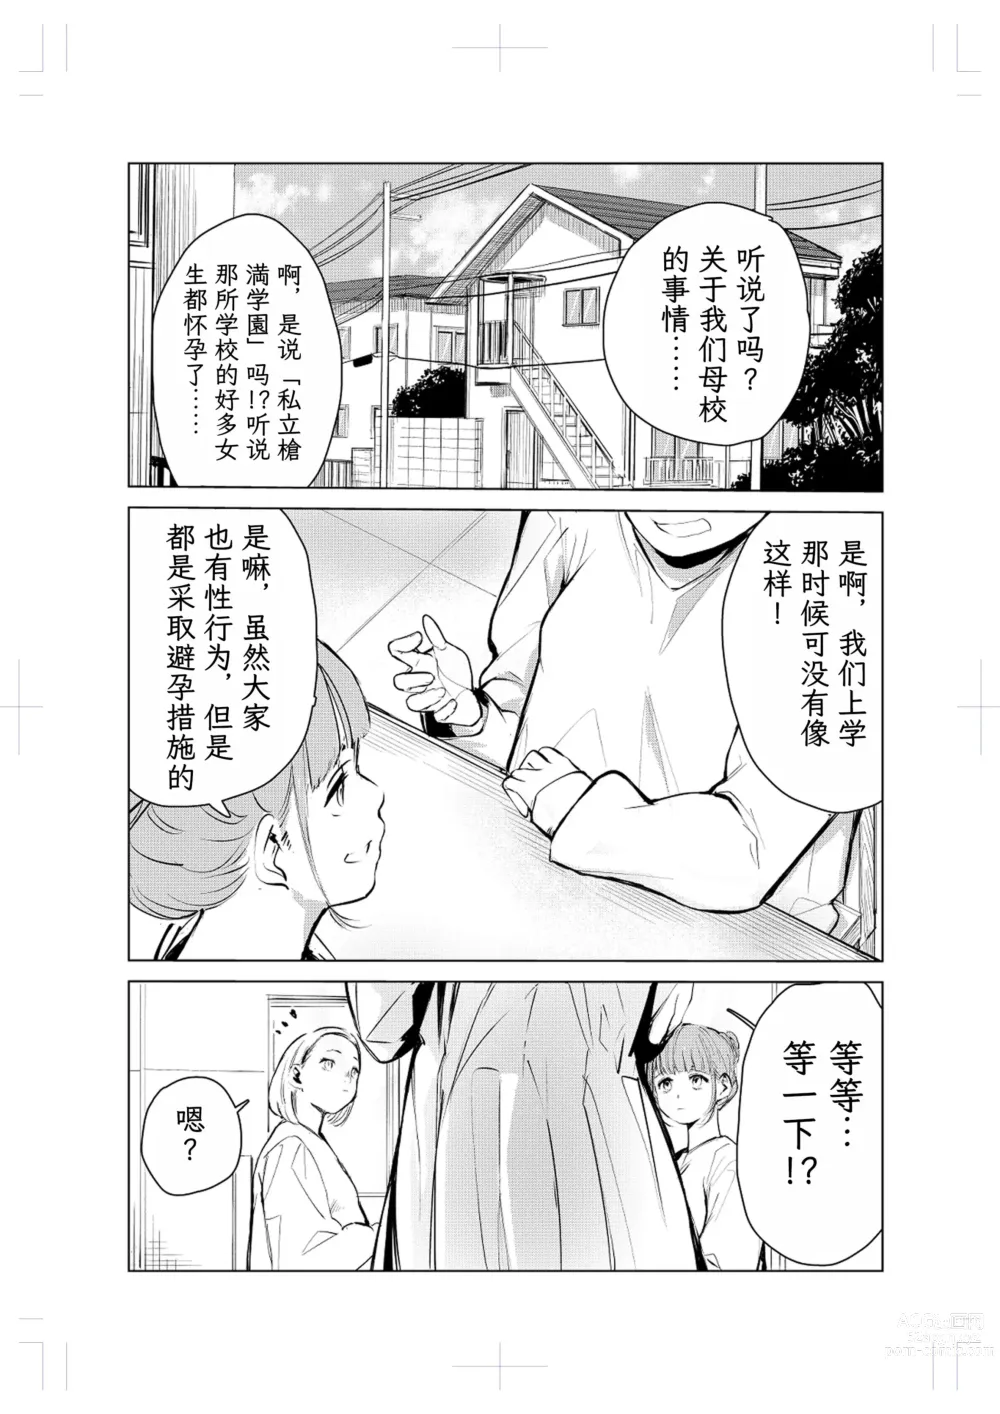 Page 3 of doujinshi 40-sai no Mahoutsukai 2